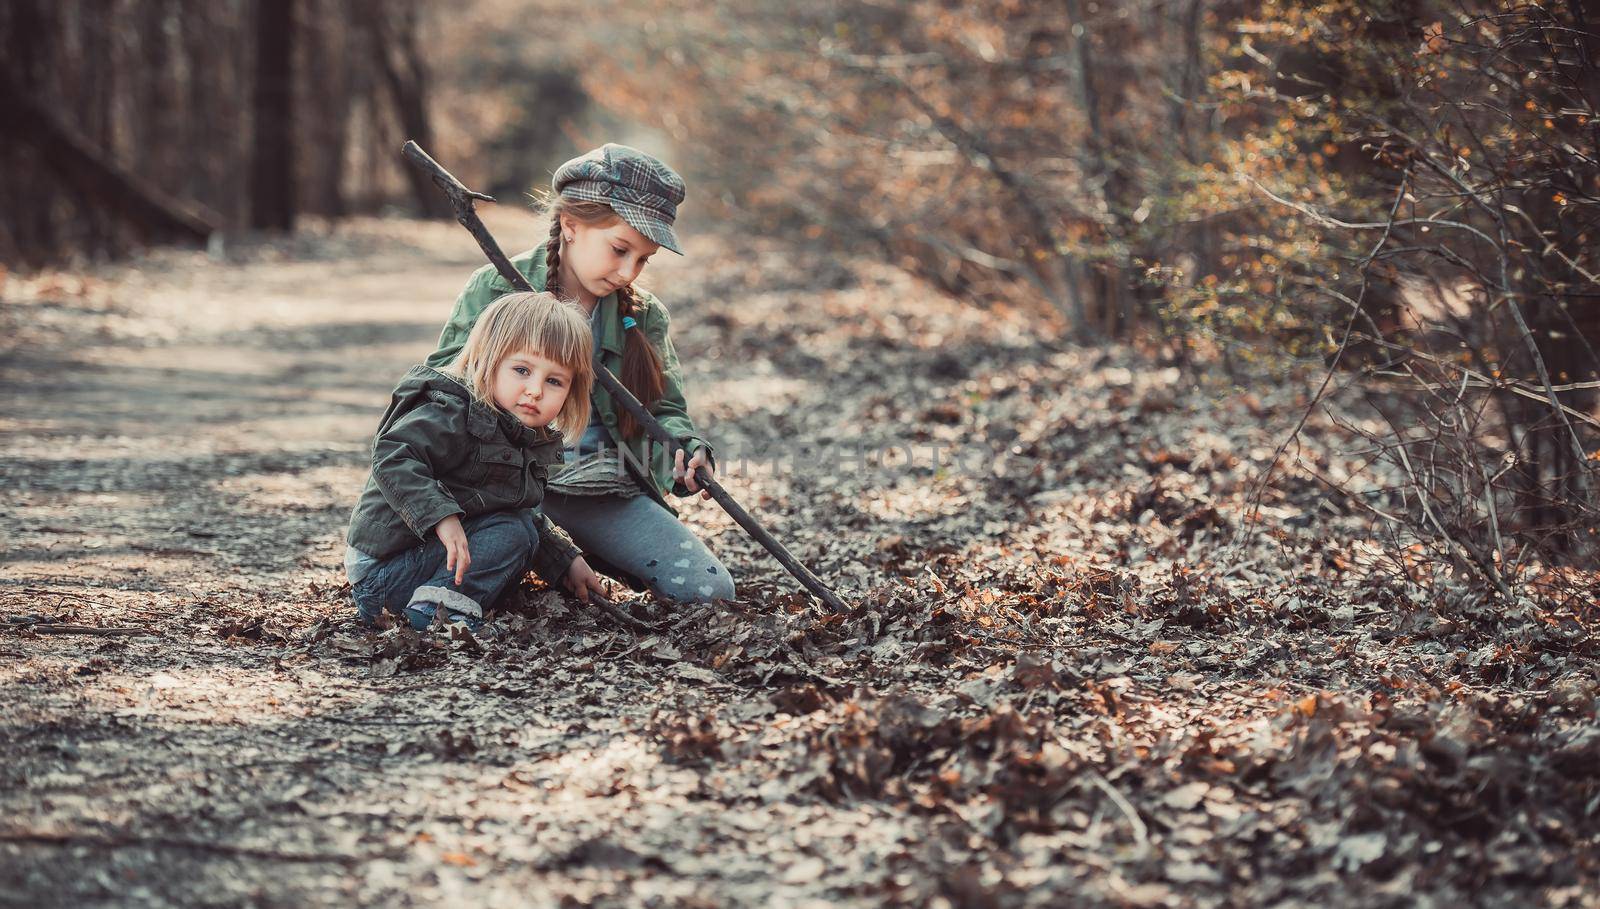 children play in the woods by GekaSkr